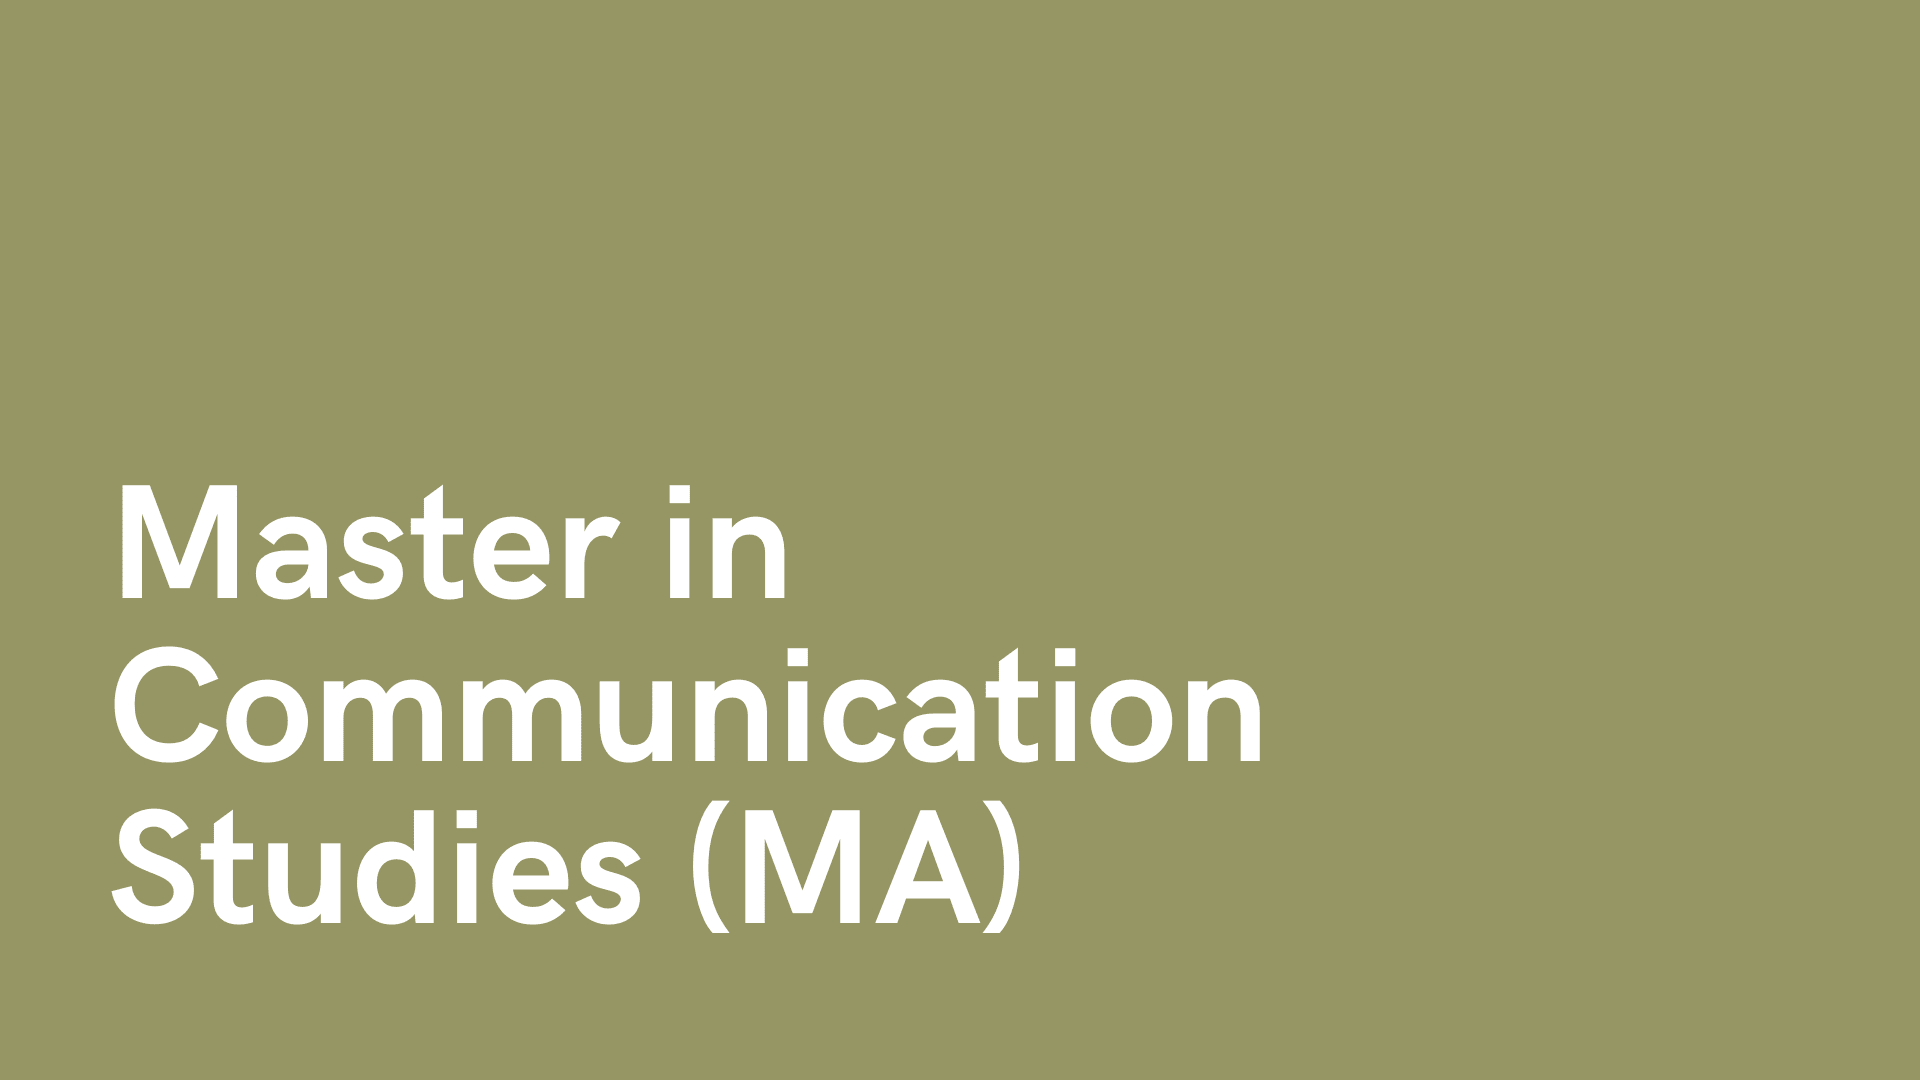 180207_MA-communicationstudies.png